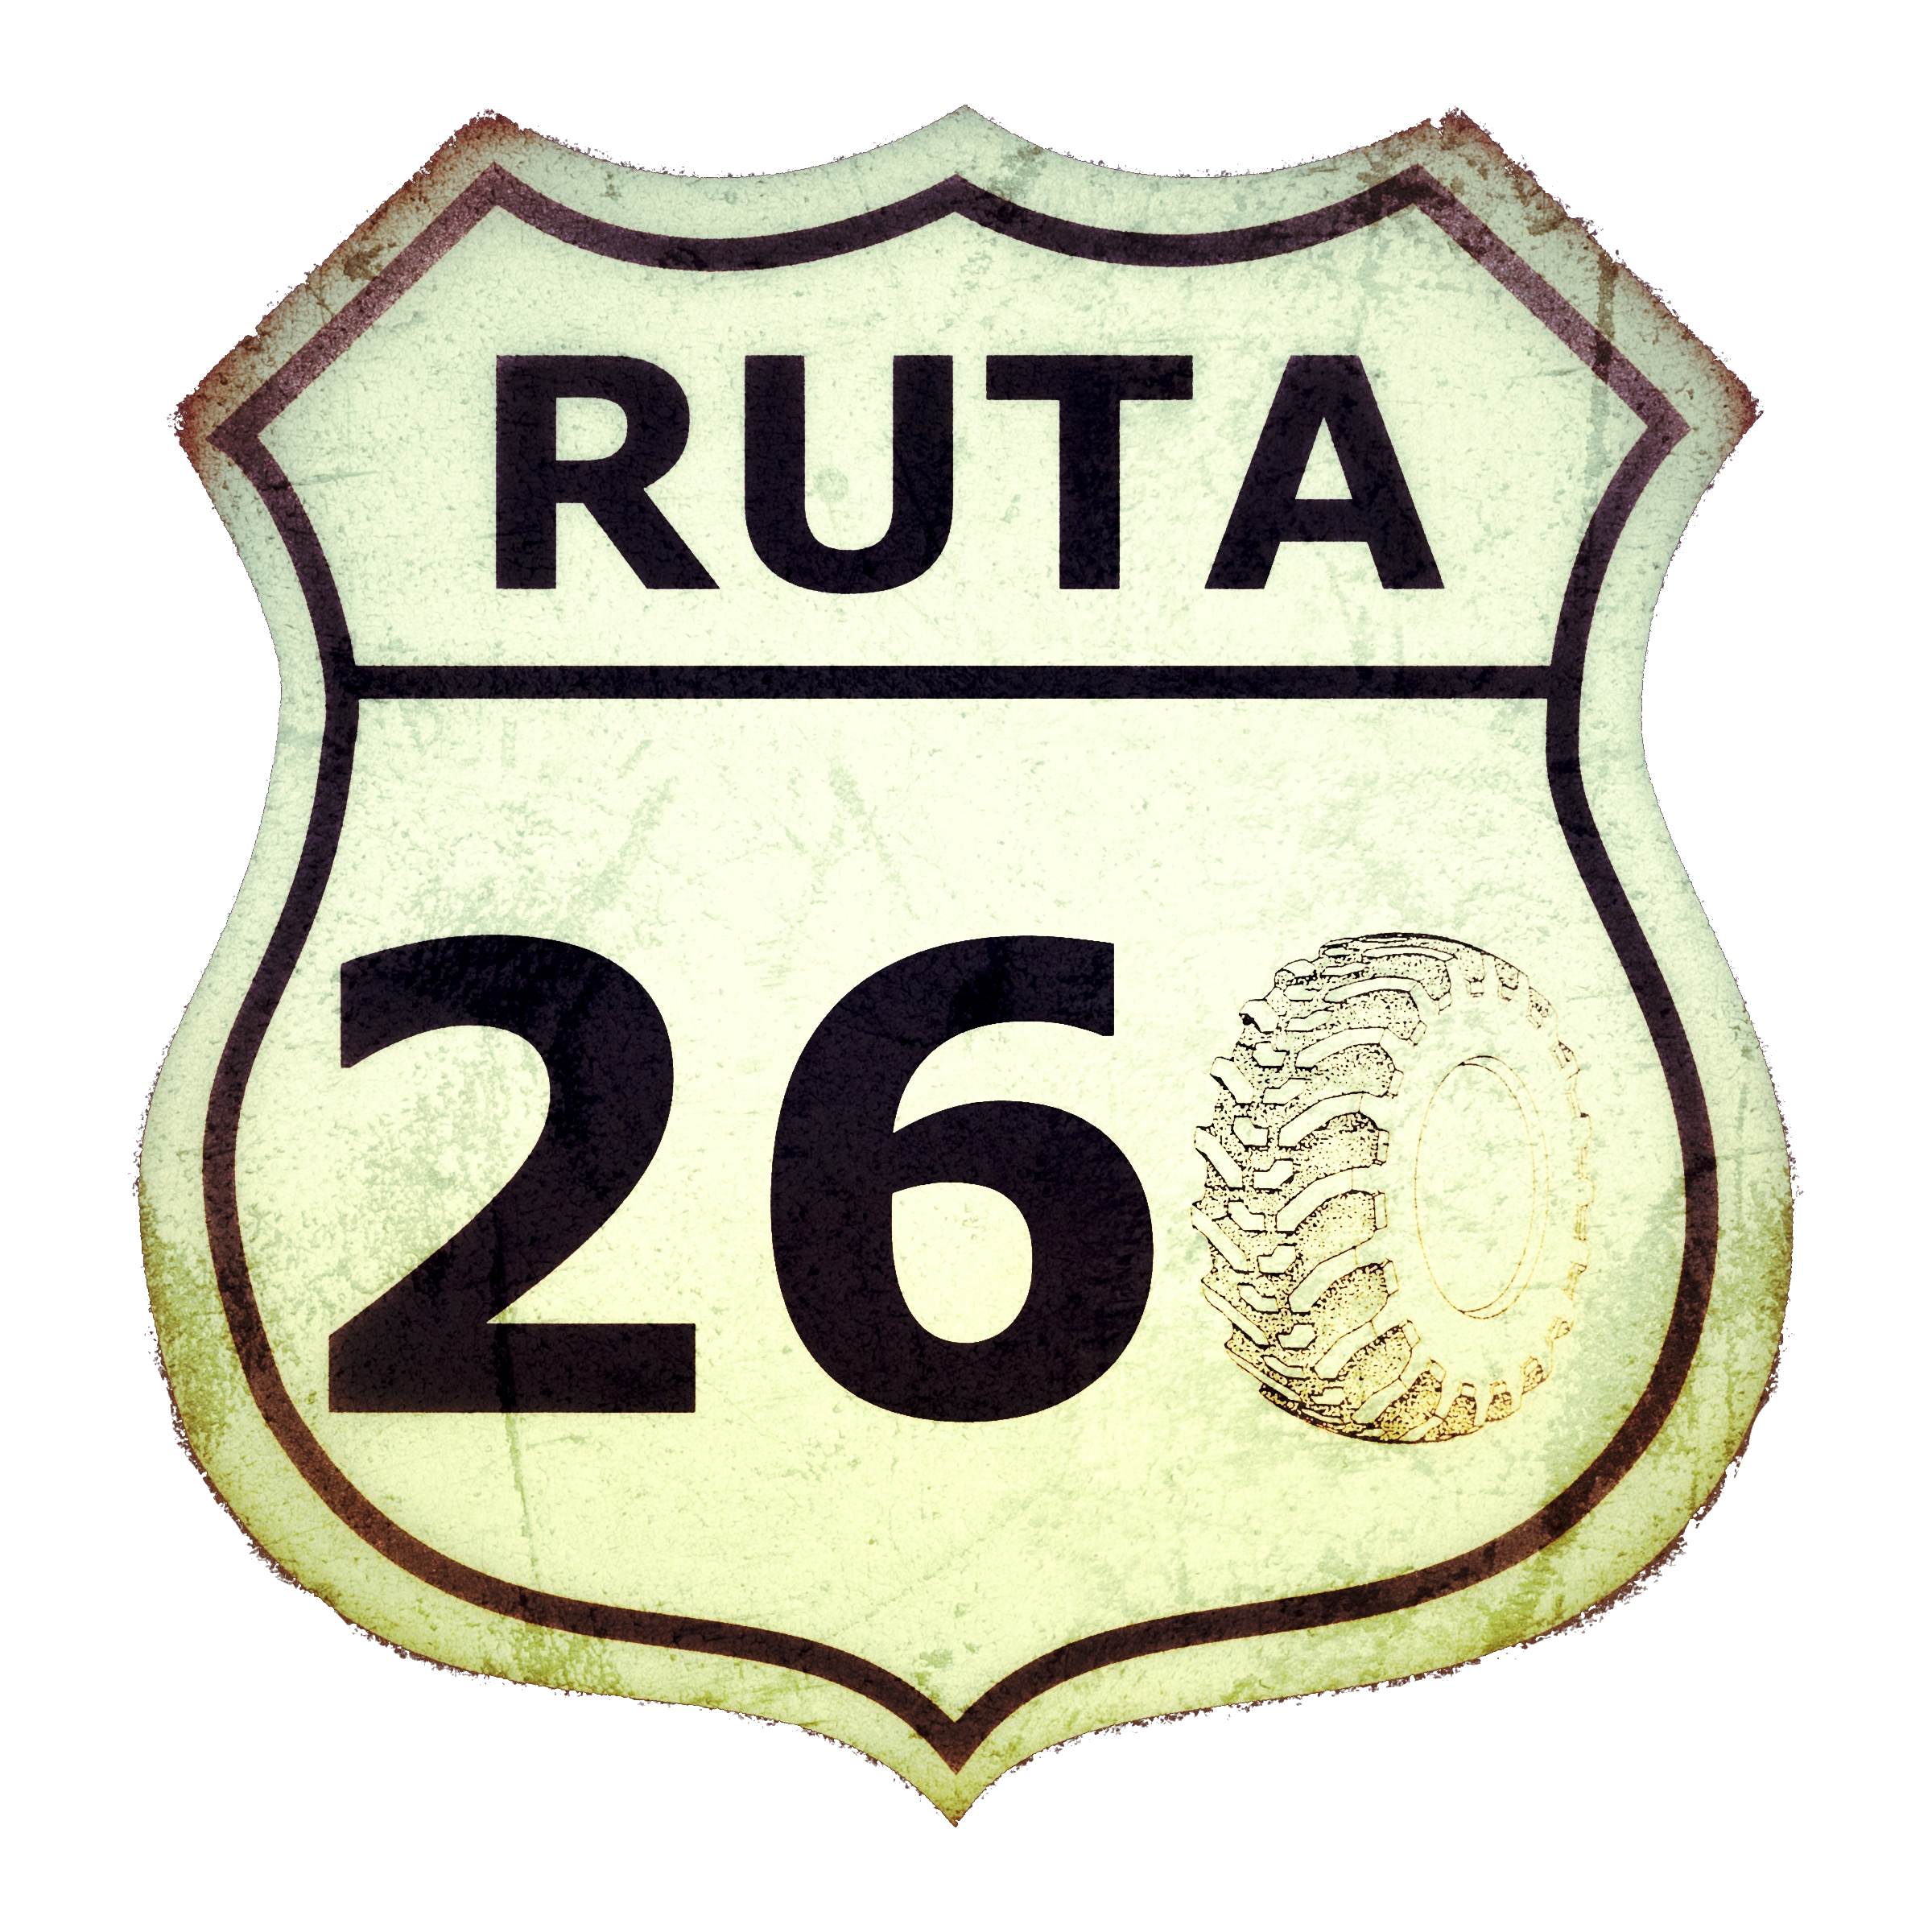 Ruta 260